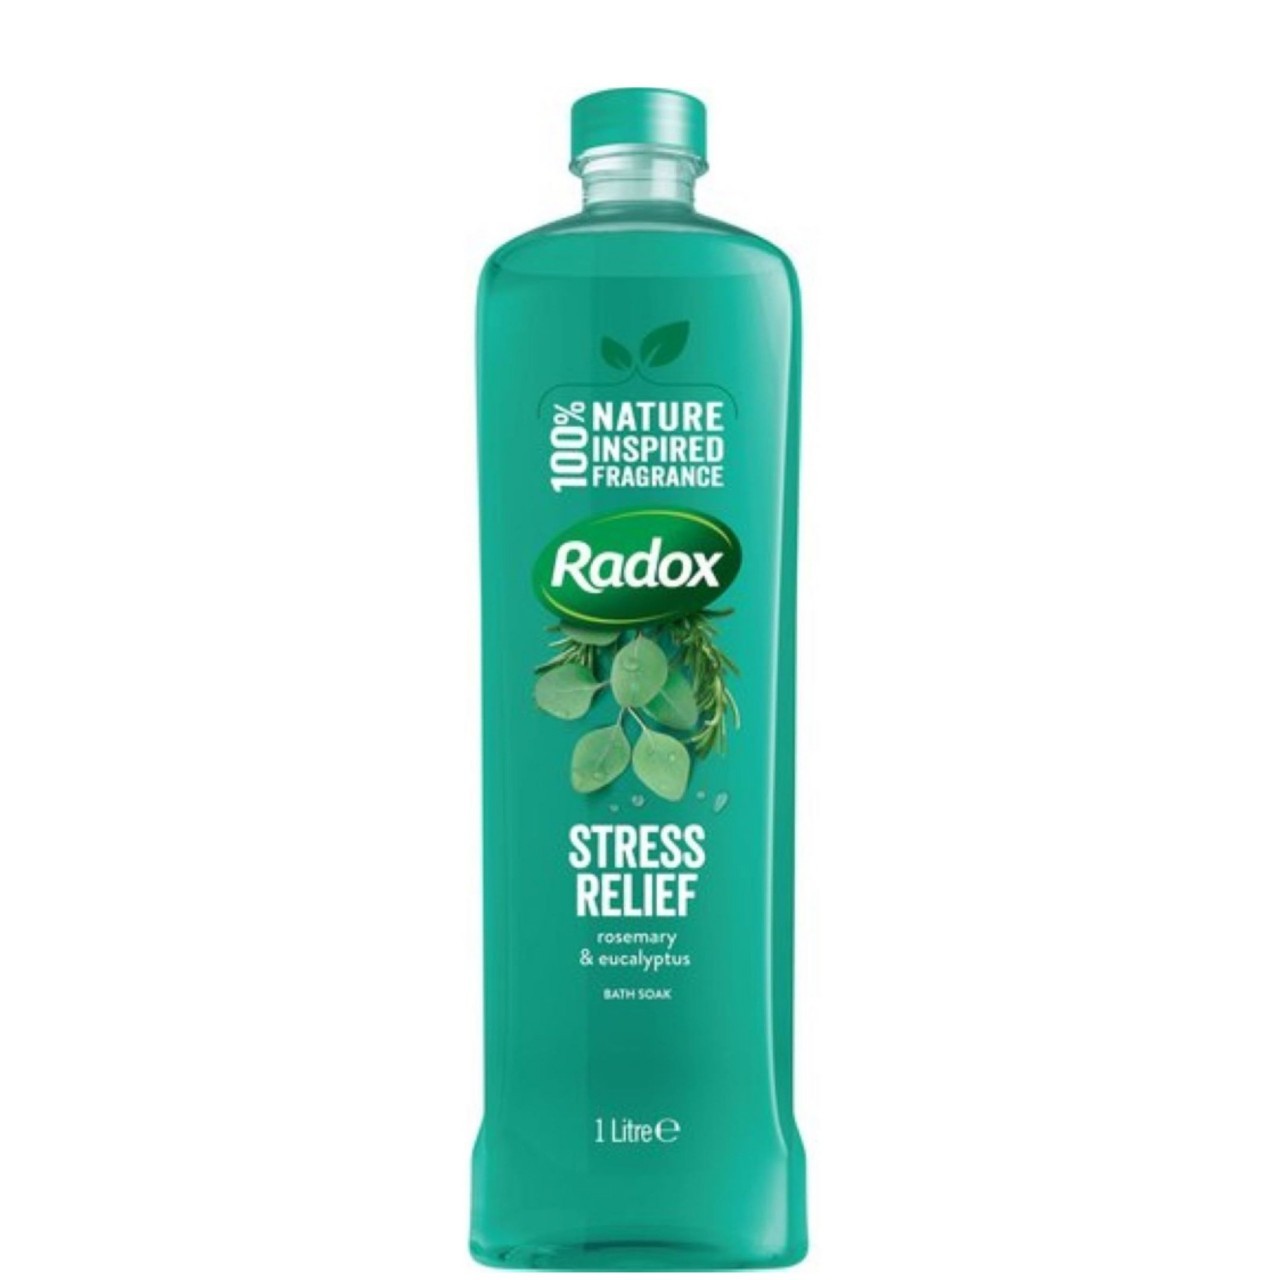 RADOX BATH SOAK STRESS RELIEF 500ml